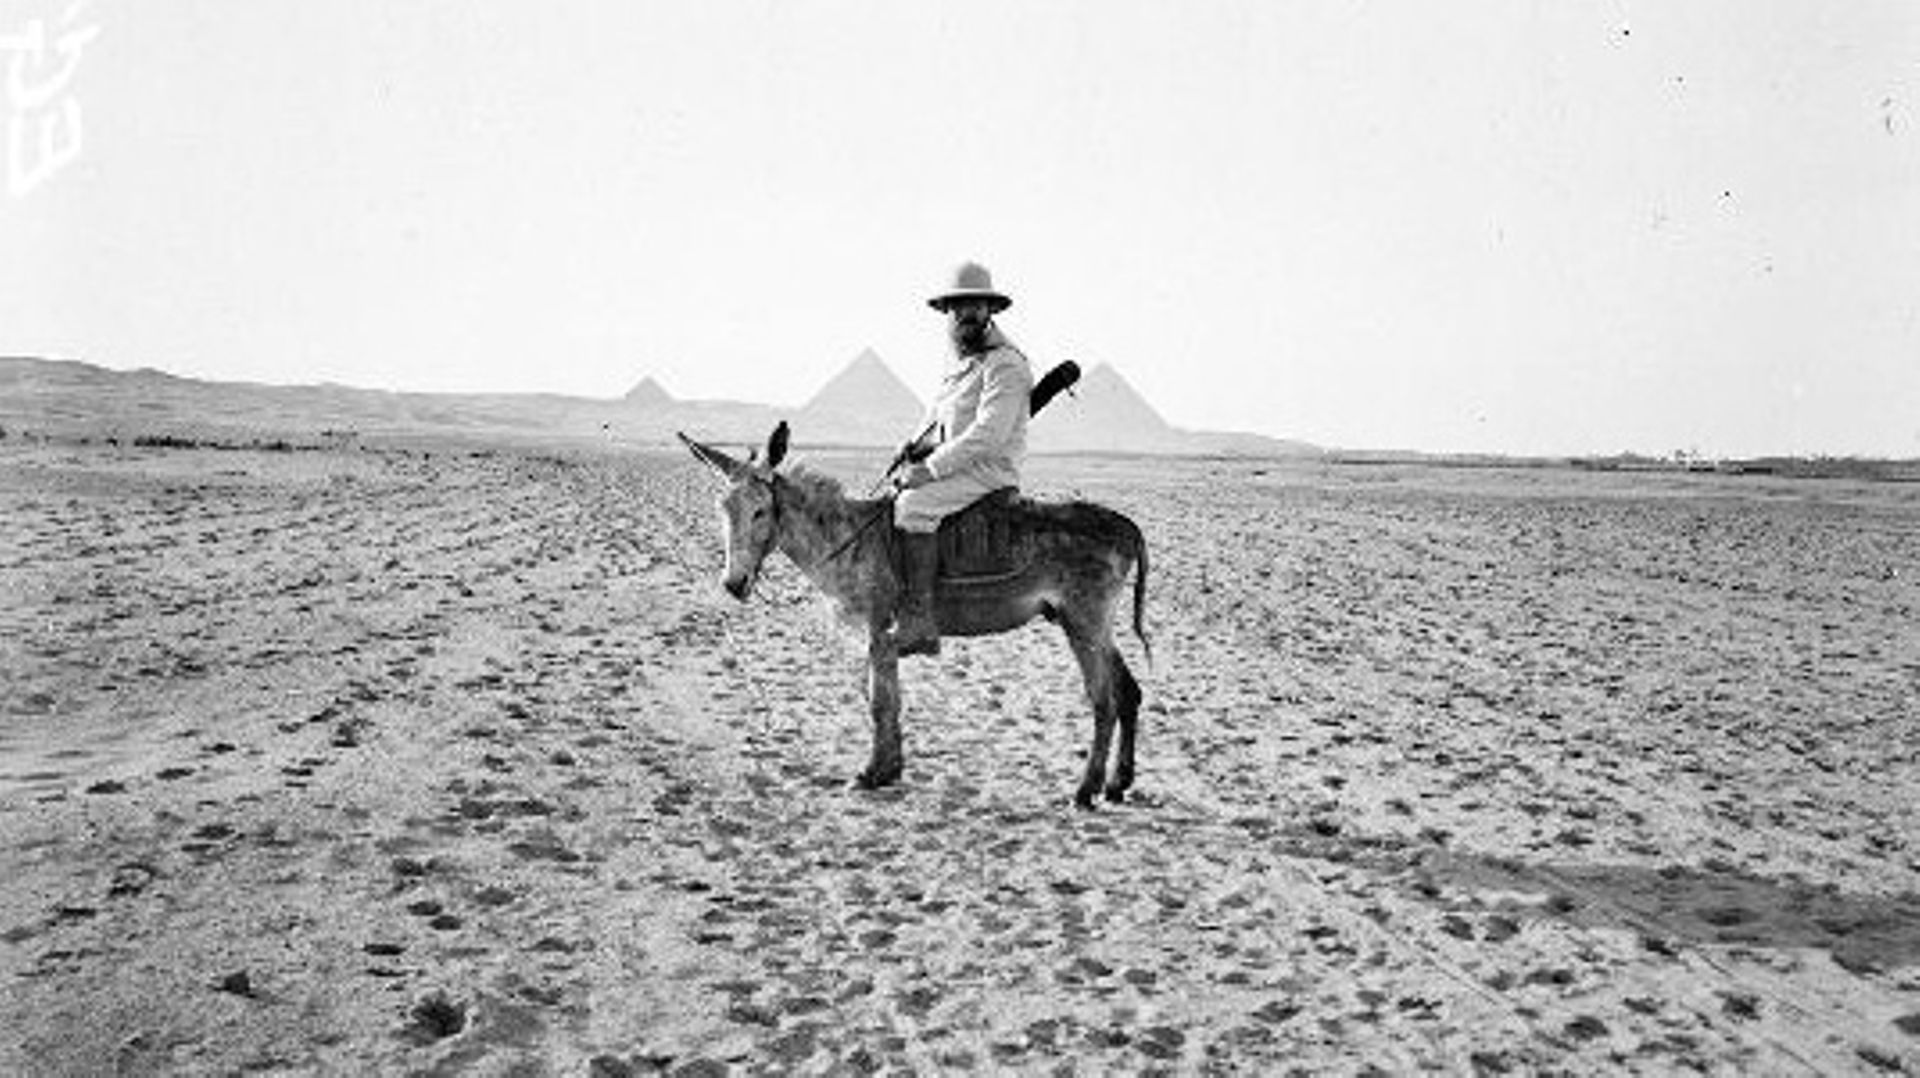 Jean Capart dans le désert entre les pyramides de Gizeh et d’Abousir, 1907
Plaque de verre
